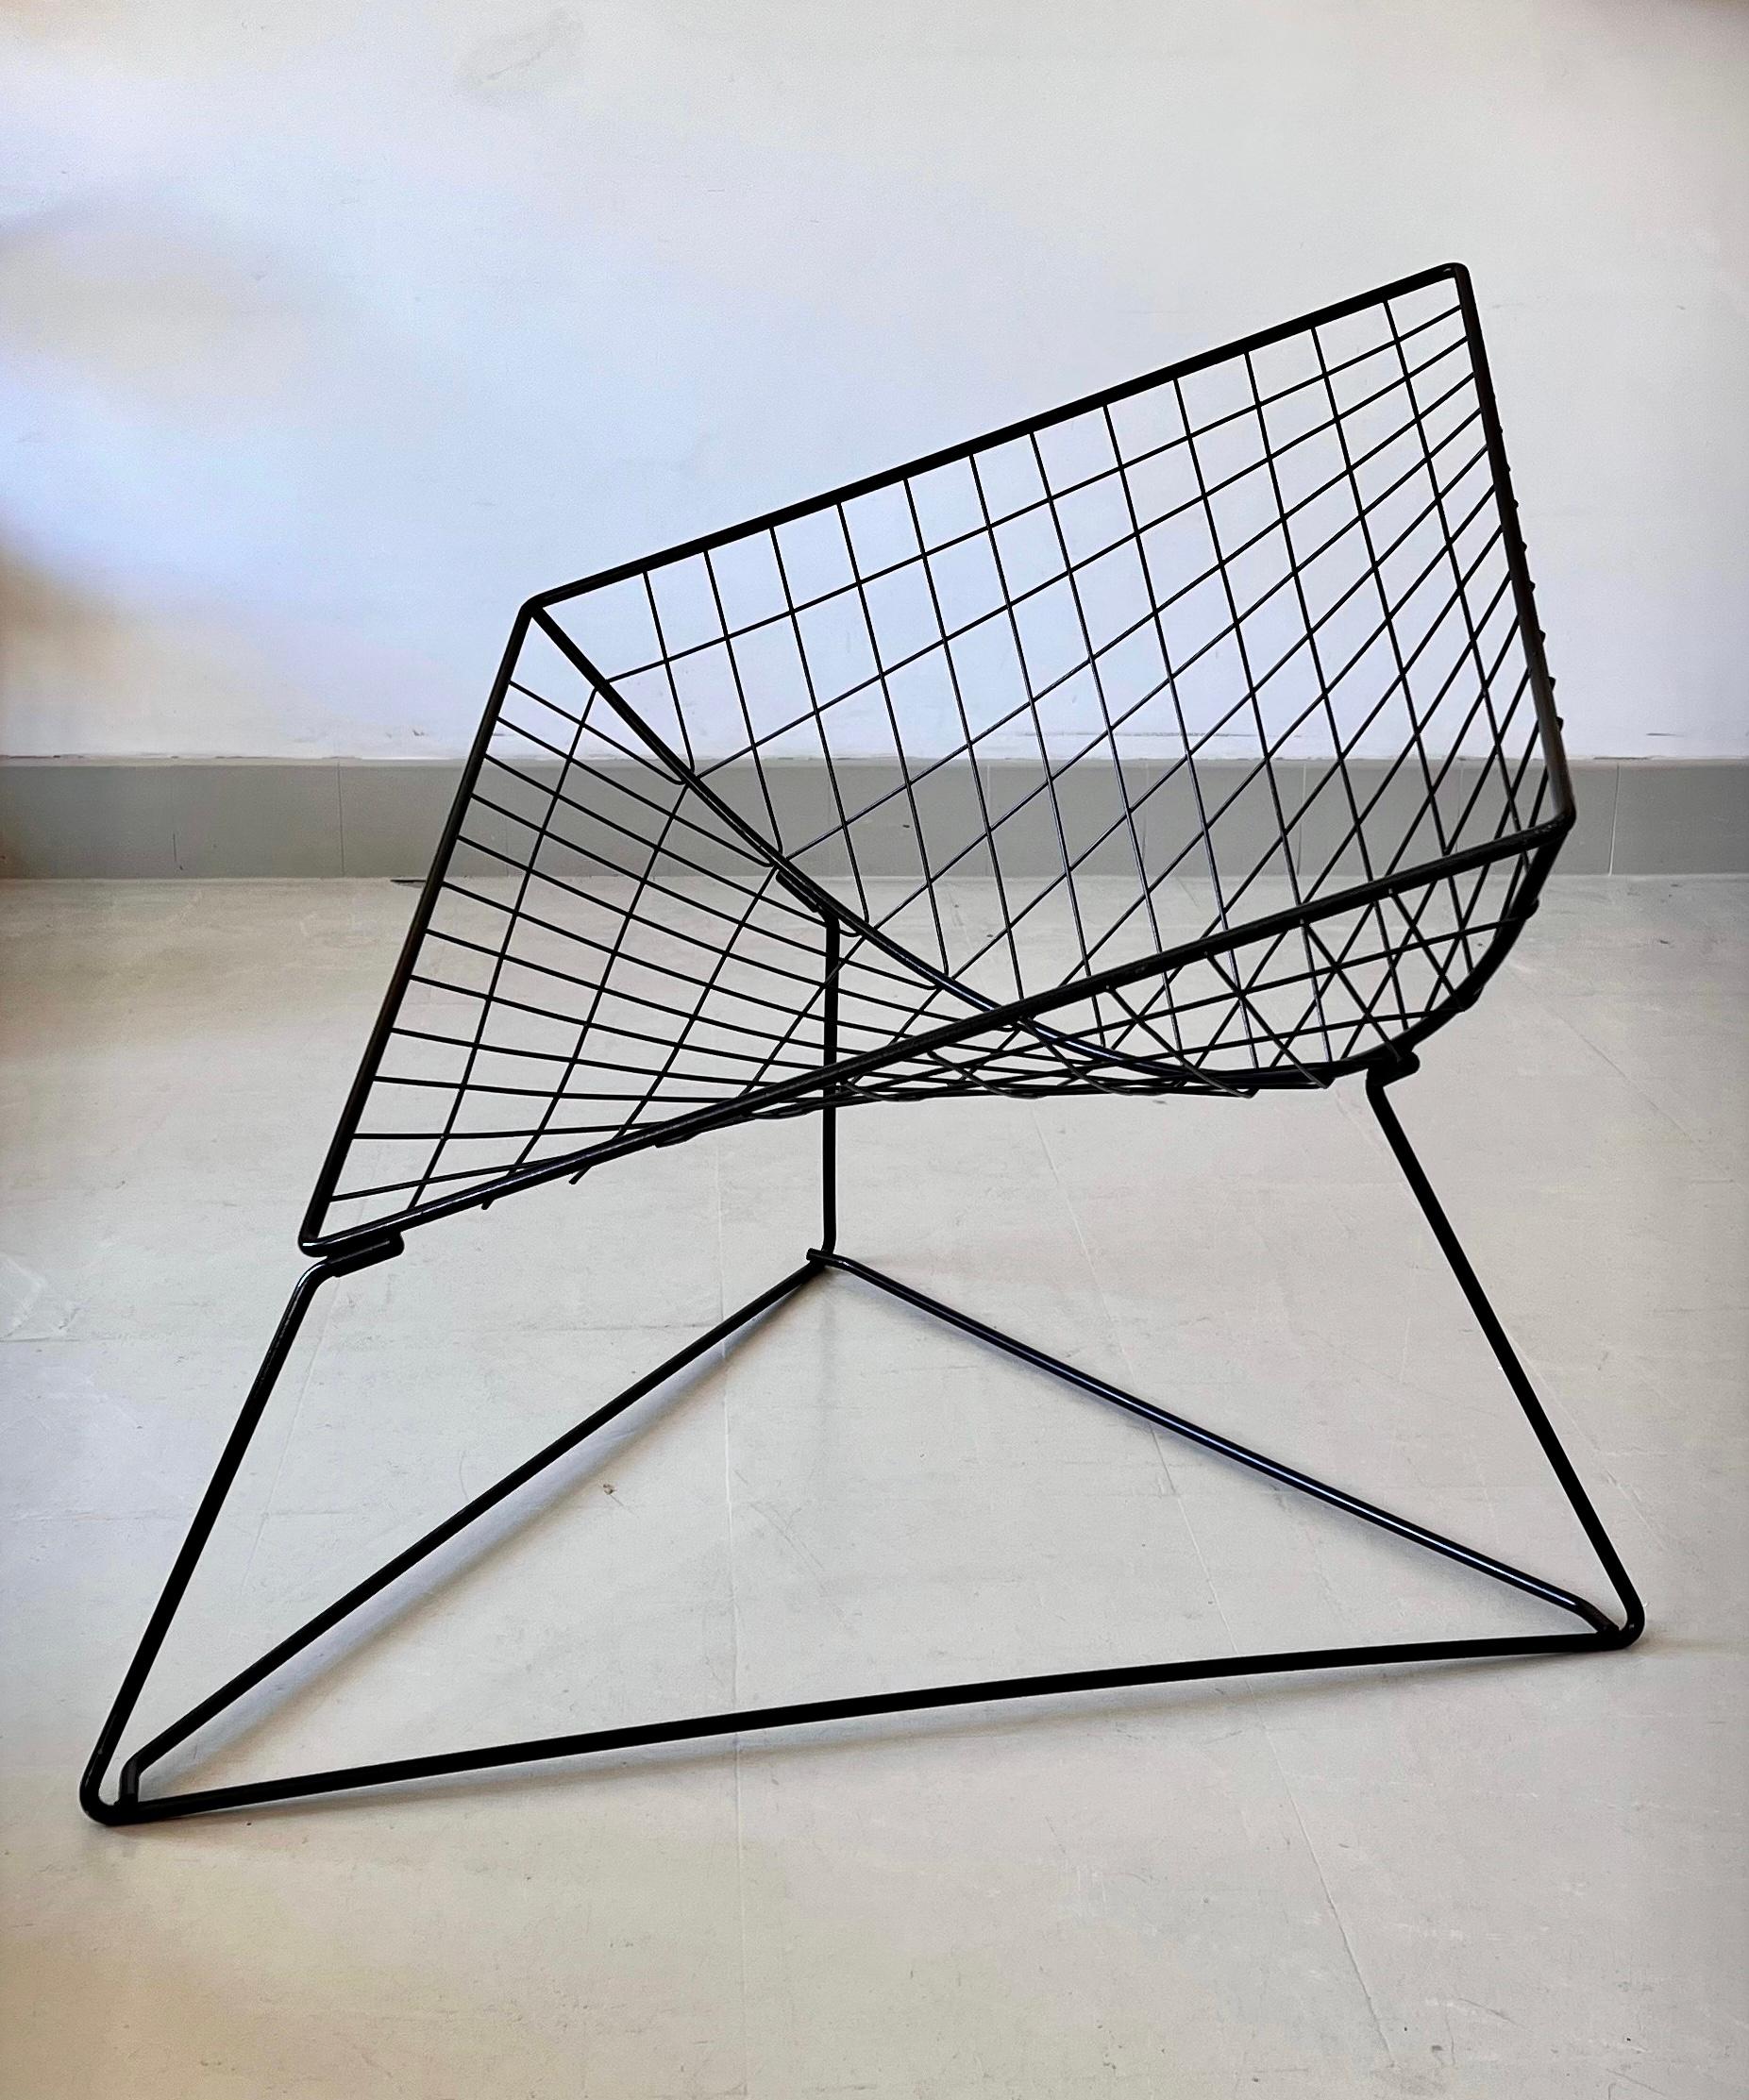 Sessel aus Stahlrohr, entworfen vom dänischen Designer Niels Gammelgaard für IKEA. 
Ein ikonisches Stück, ein echter Klassiker des dänischen Designs. In sehr gutem Zustand. 
Die lackierte Metallstruktur bildet einen Diamanten, der auf einem Dreieck